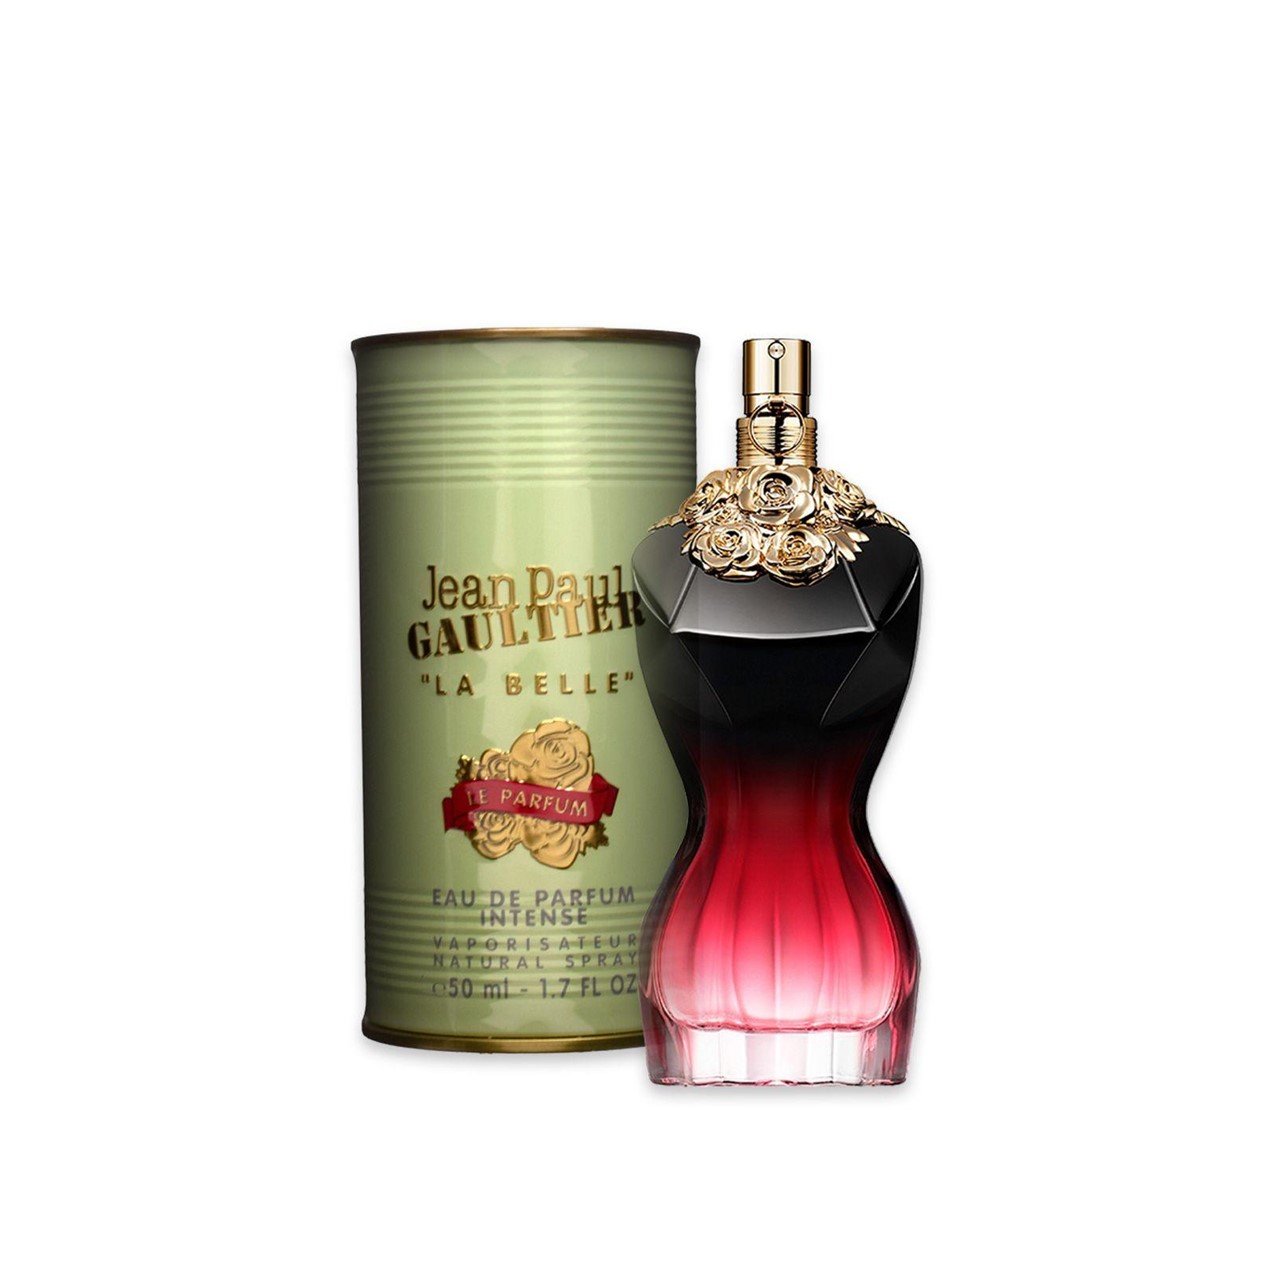 Jean Paul Gaultier La Belle Le Parfum Eau de Parfum Intense 50ml (1.7fl oz)